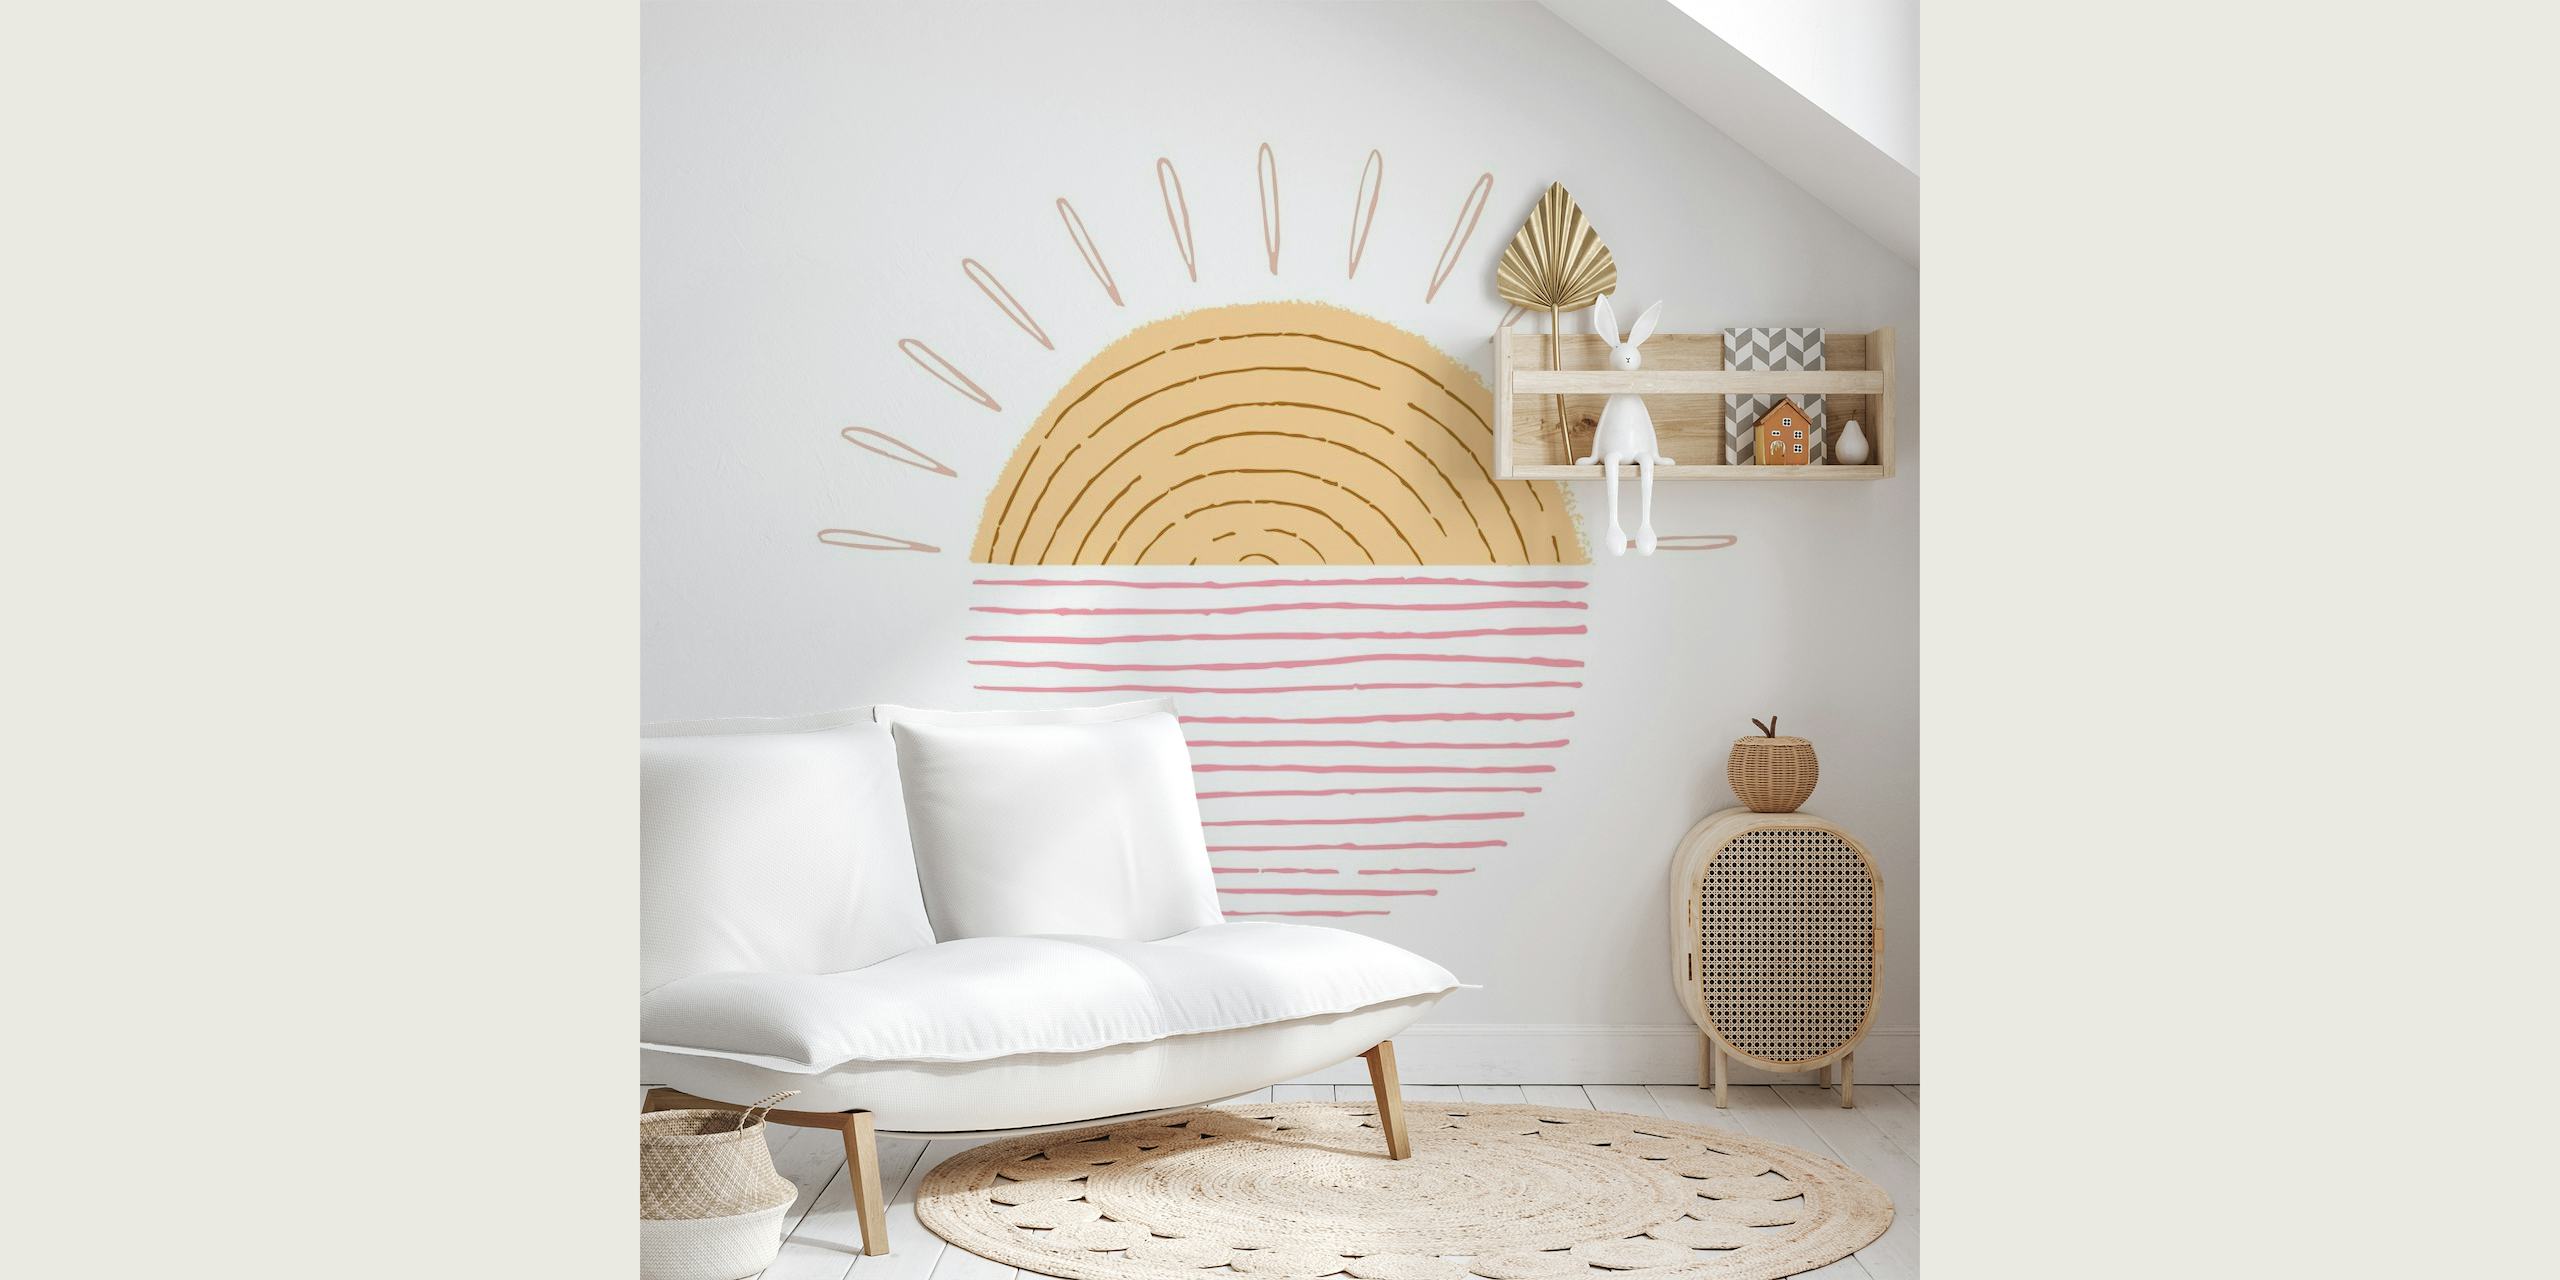 Ilustrativní nástěnná malba Sweet Sunrise s teplými tóny a minimalistickým designem